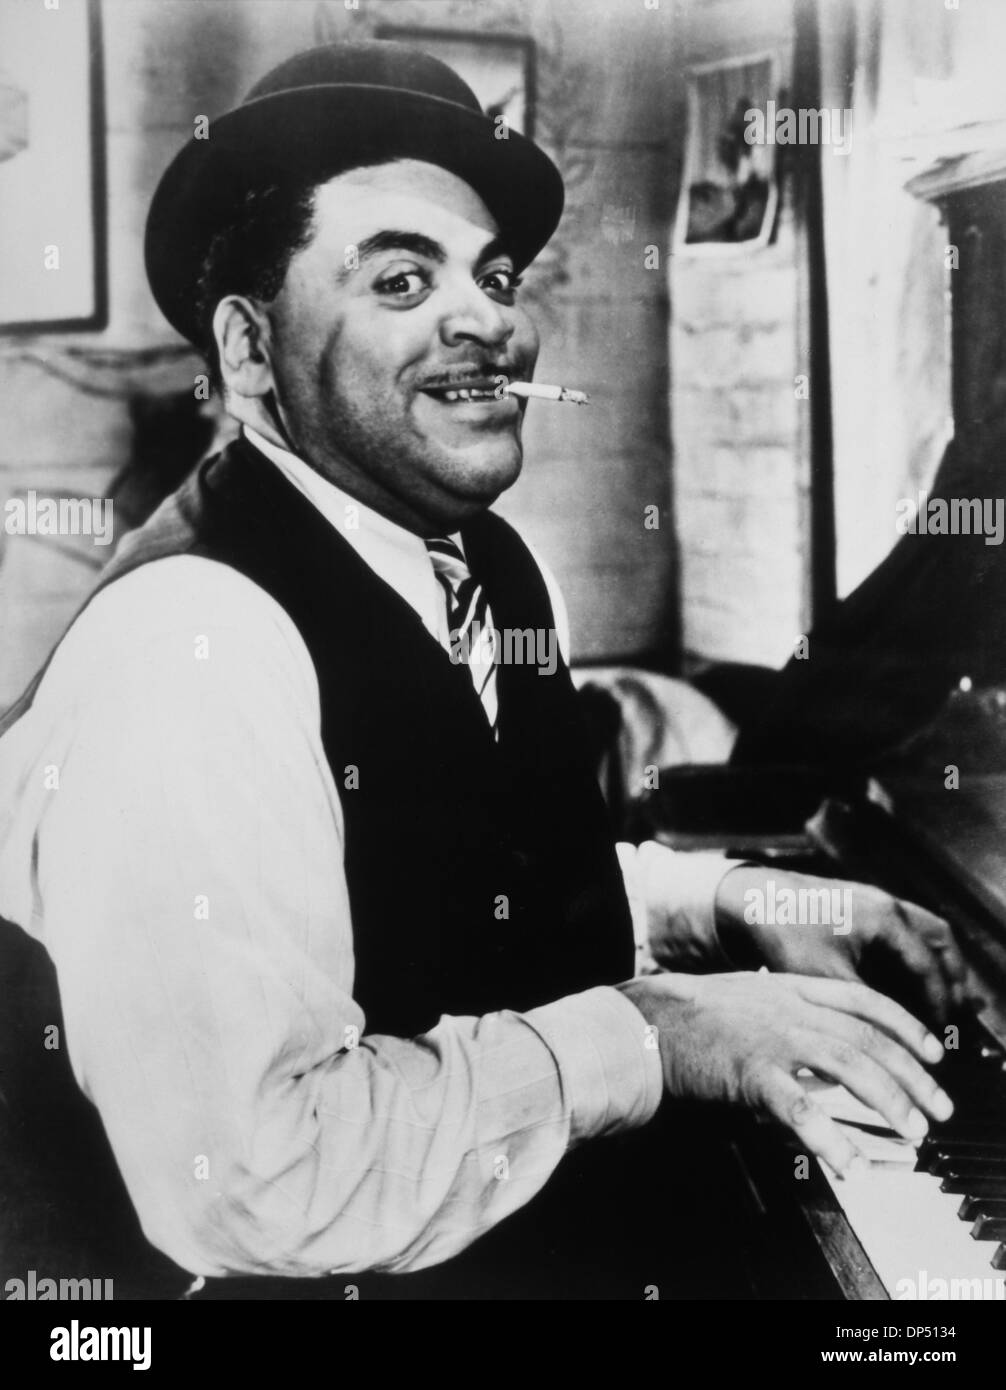 Fats Waller (1904-1943), US-amerikanischer Jazz-Pianist, Komponist und Sänger, spielt Klavier und qualmender Zigarette, 1942 Stockfoto